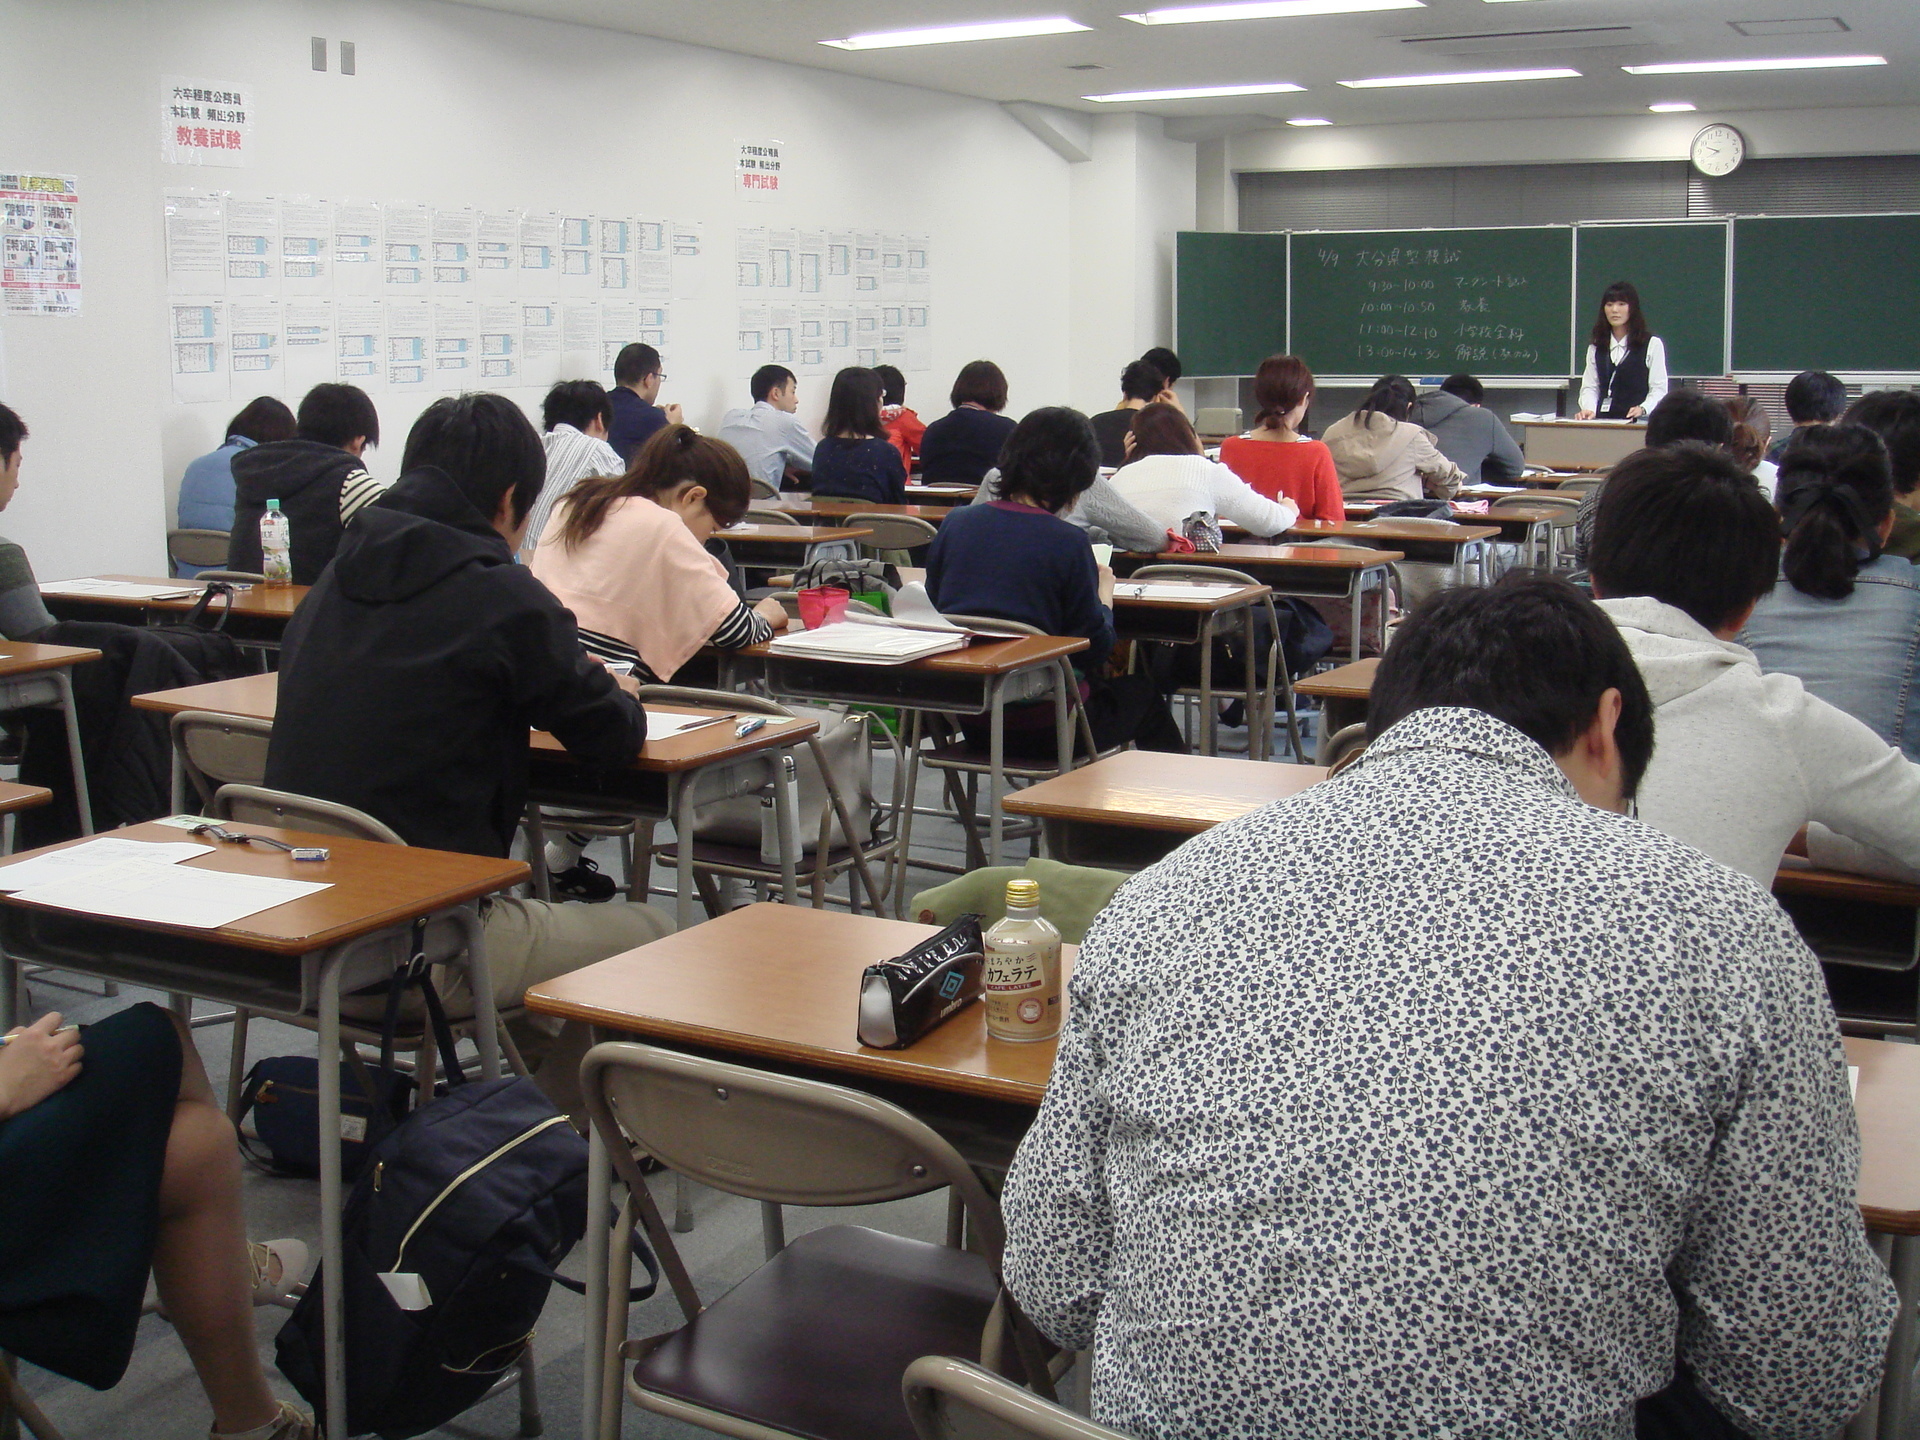 教員採用 大分県模試がありました 東京アカデミー大分校 教員採用試験 看護師国家試験 公務員試験 のブログ